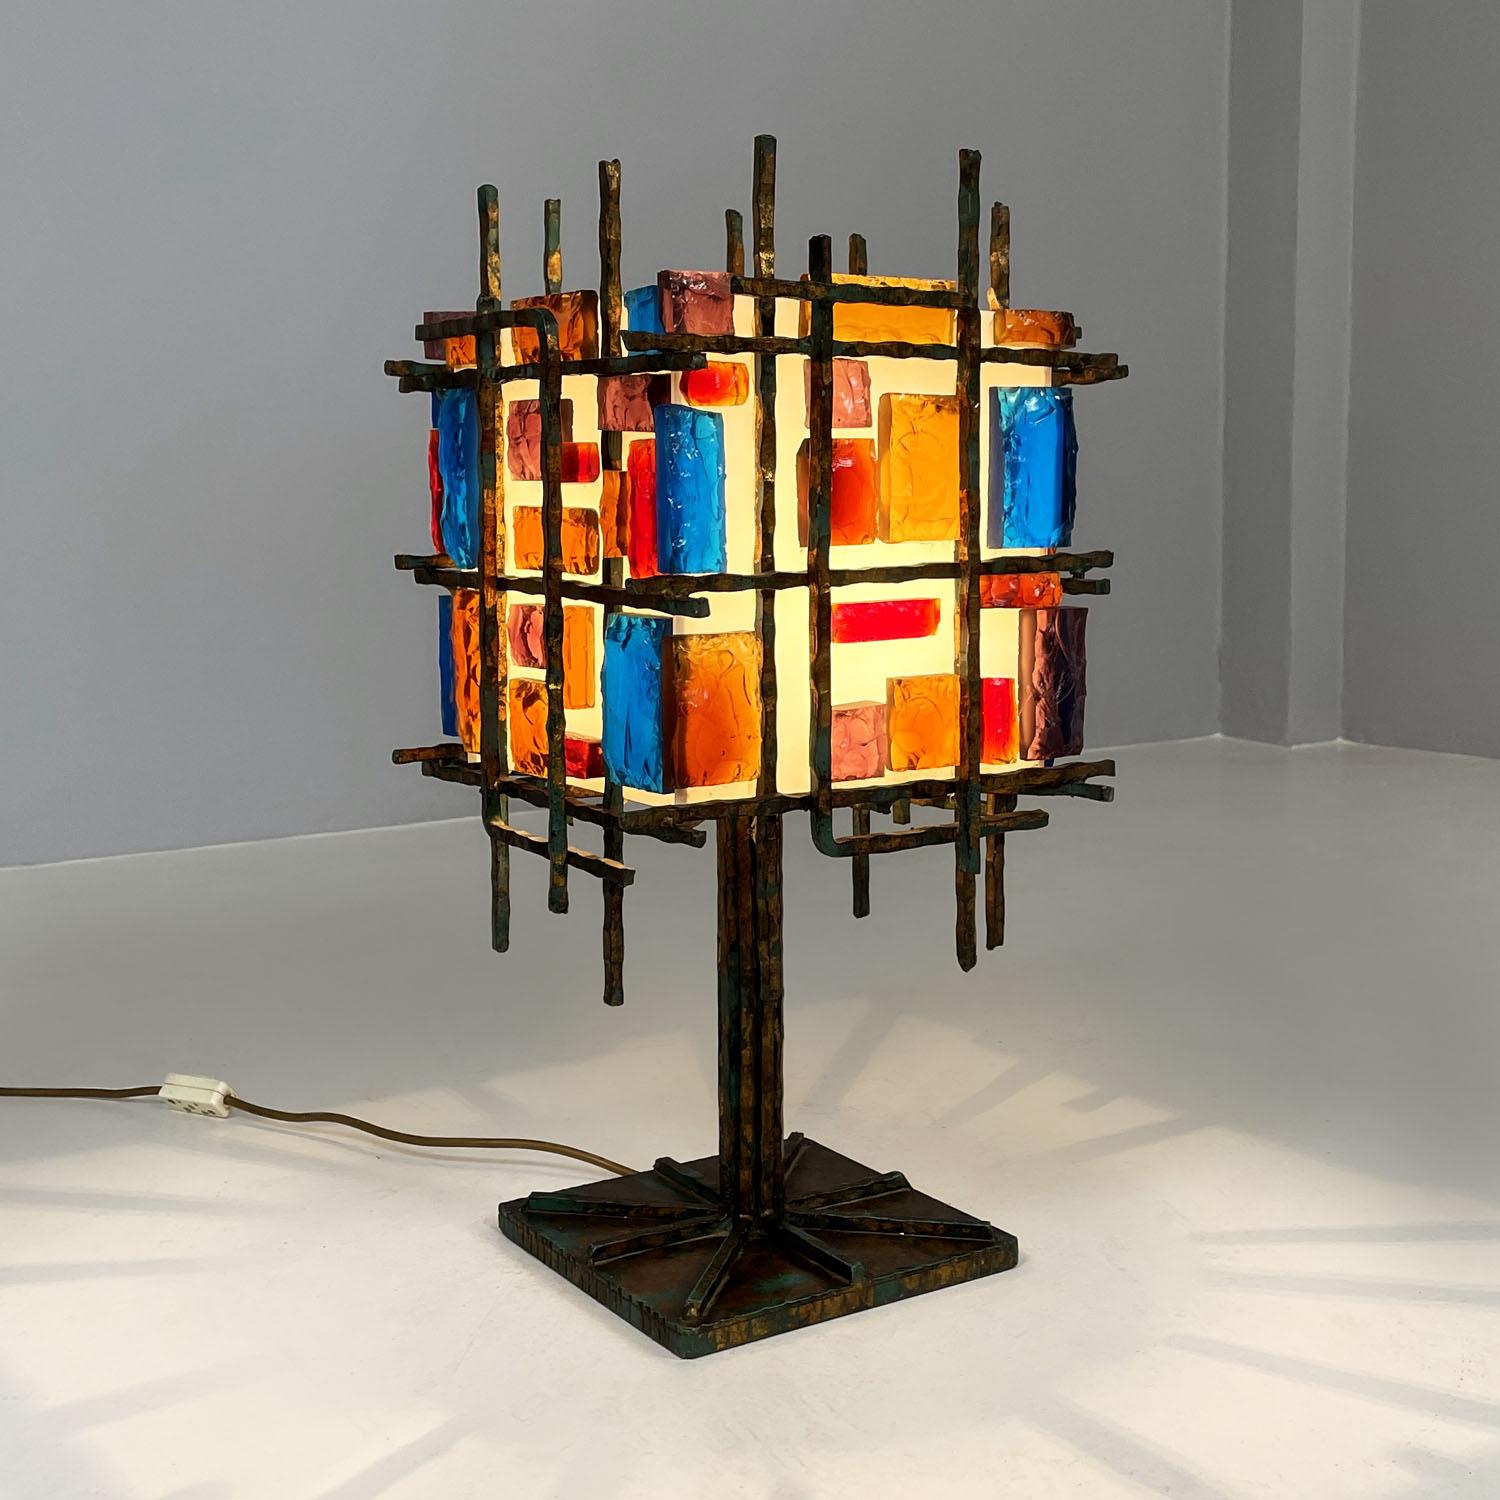 Italienische brutalistische geometrische Tischlampe aus Messing und farbigem Glas, 1950er Jahre
Tischlampe im brutalistischen Stil. Der quadratische Sockel und die Hauptstruktur sind aus Messing, mit geometrischen und materiellen Formen, die,